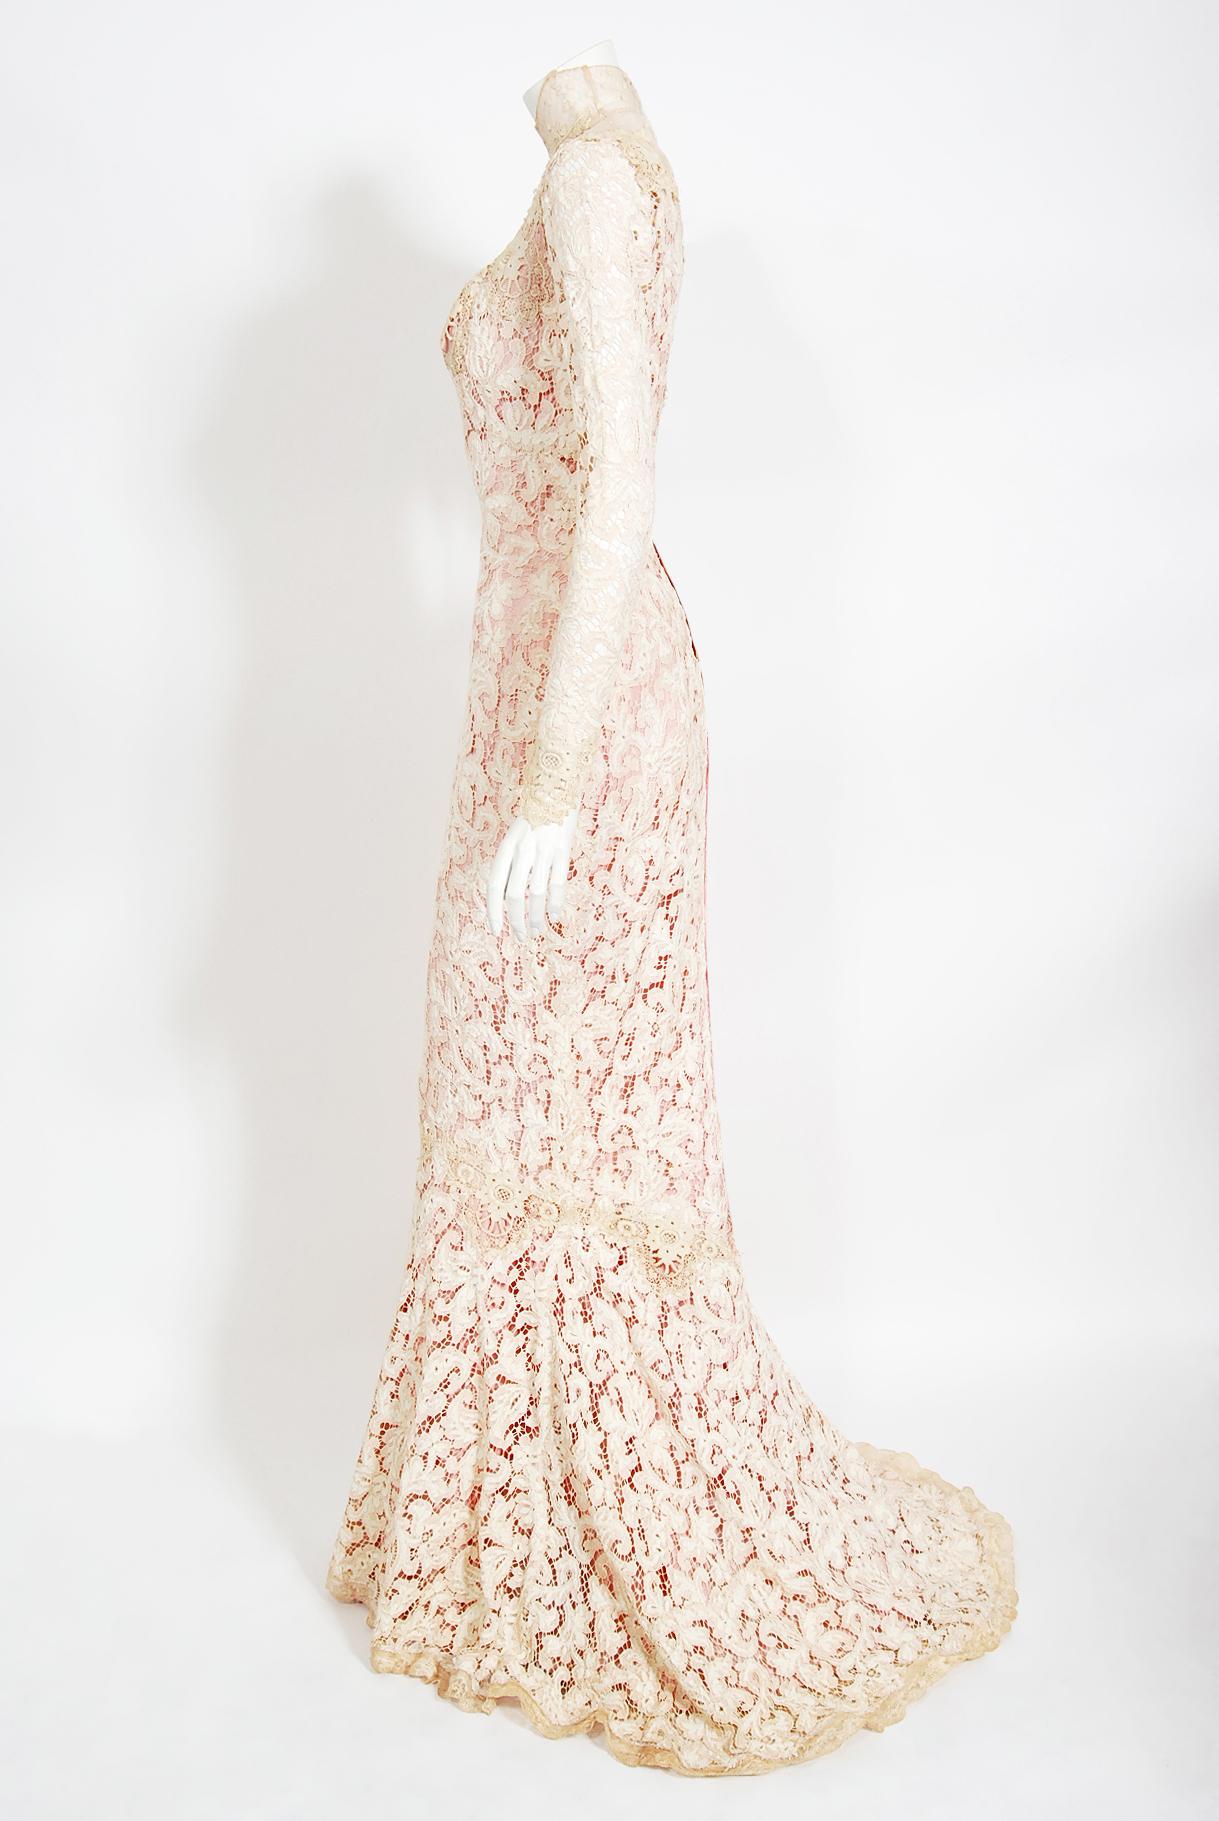 Ikonisches viktorianisches Kleid aus elfenbeinfarbener Spitze und rosa Seide, Gypsy Rose Lee Custom Couture, 1969 2